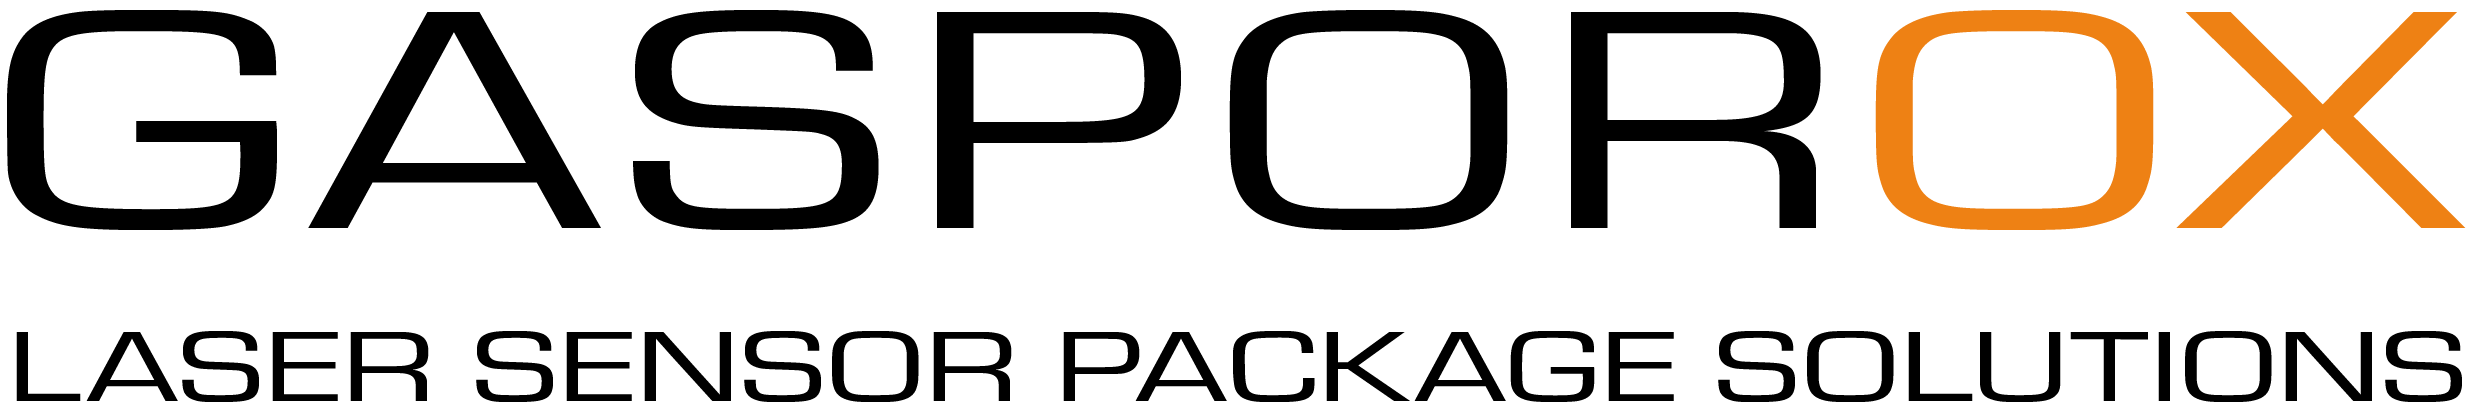 gasporox-logo.png